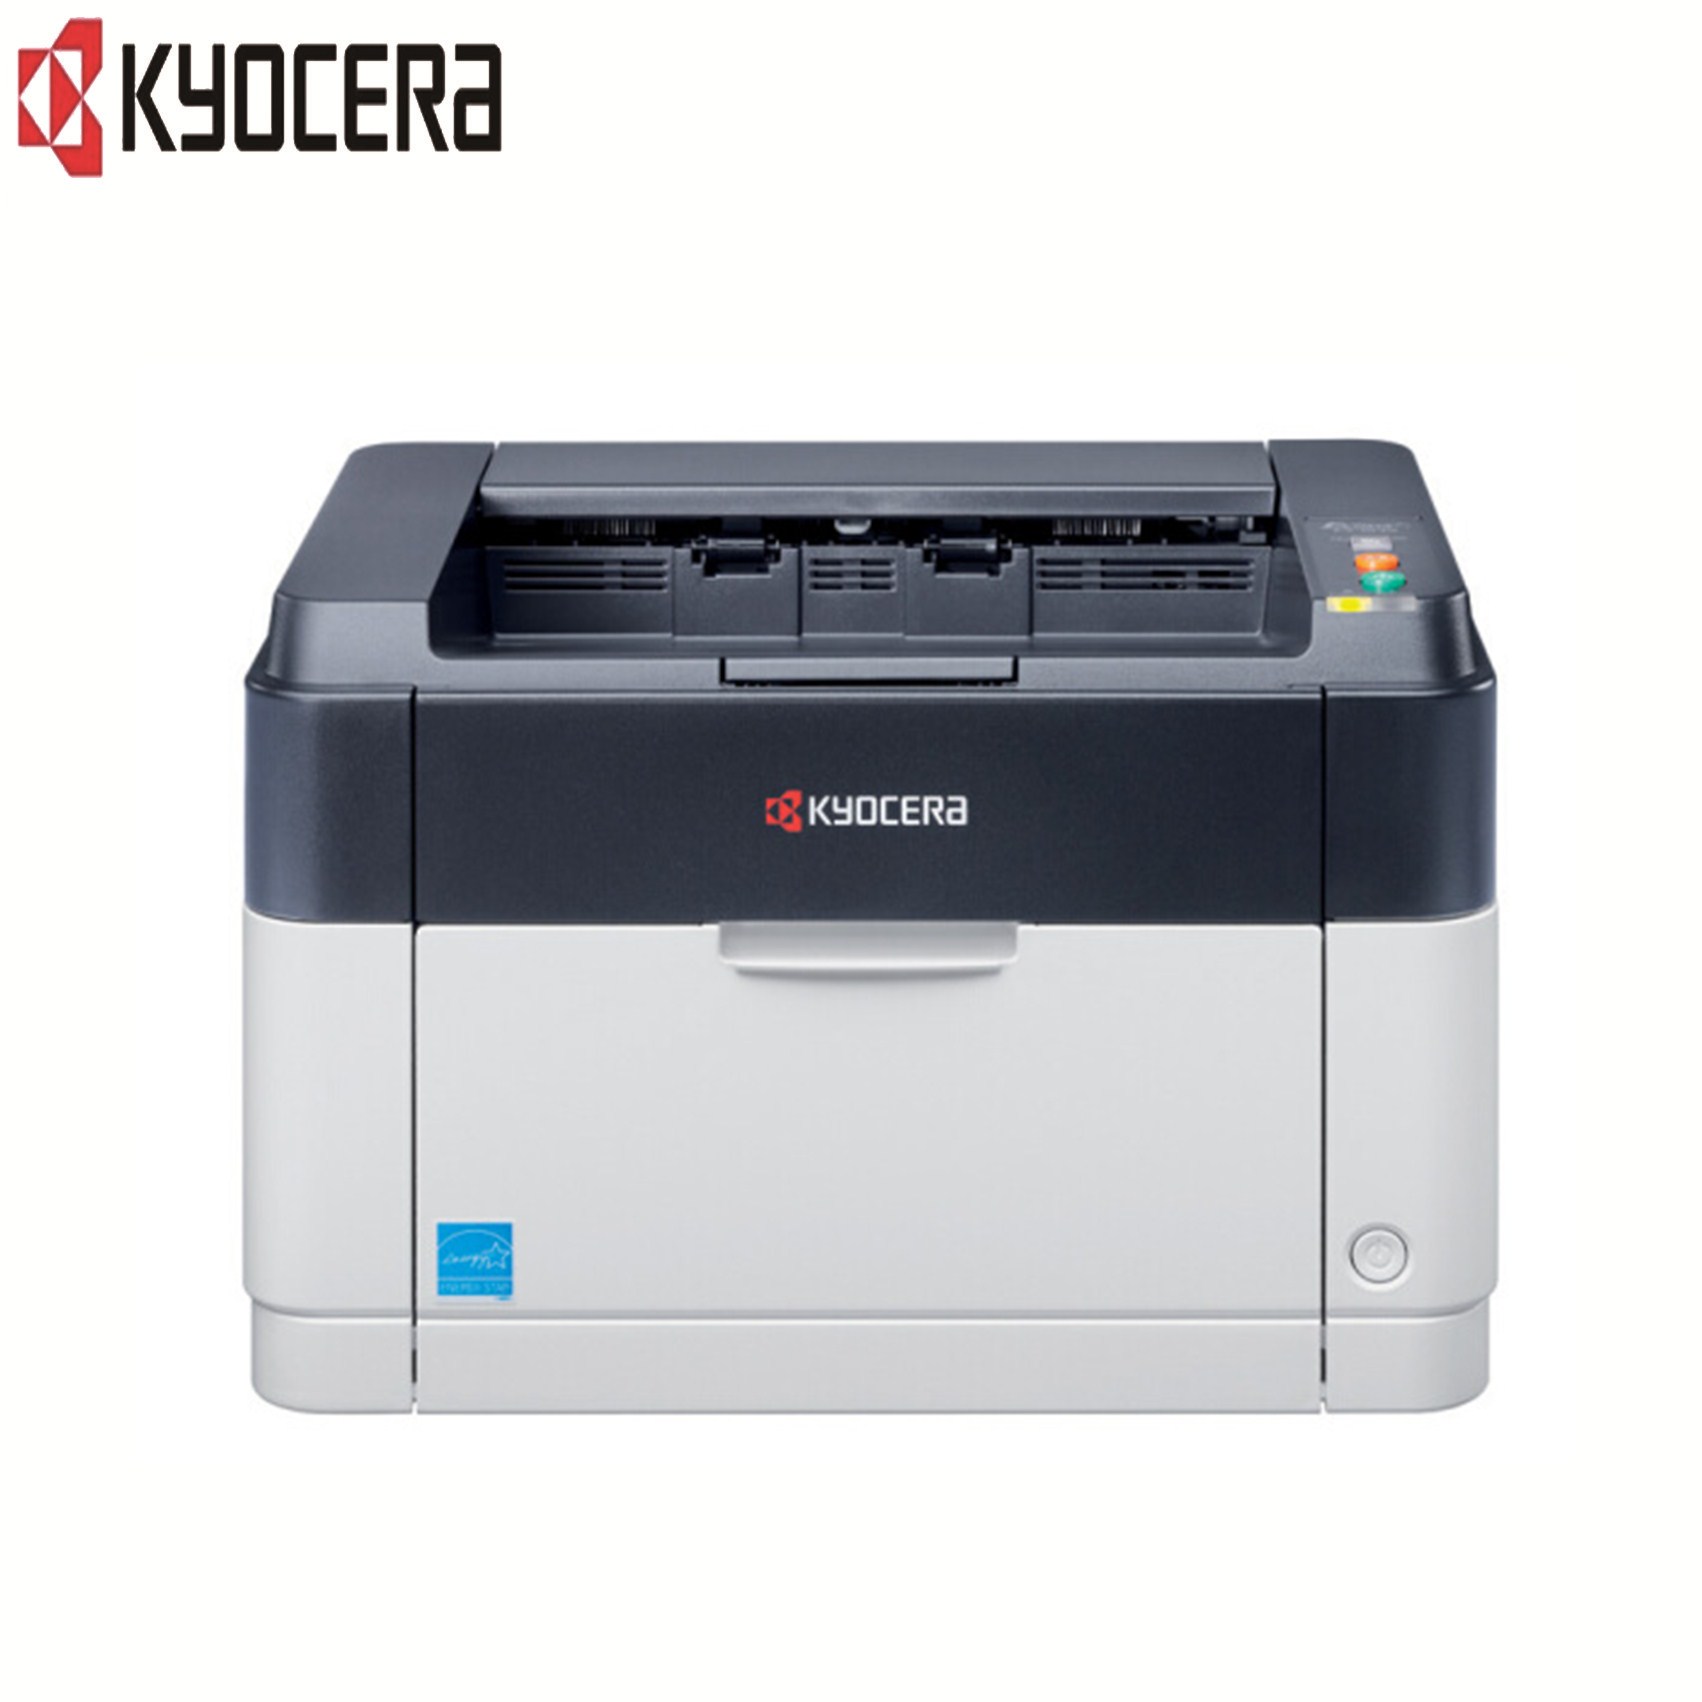 京瓷(KYOCERA)FS-1060DN黑白激光打印机 自动双面支持网络打印